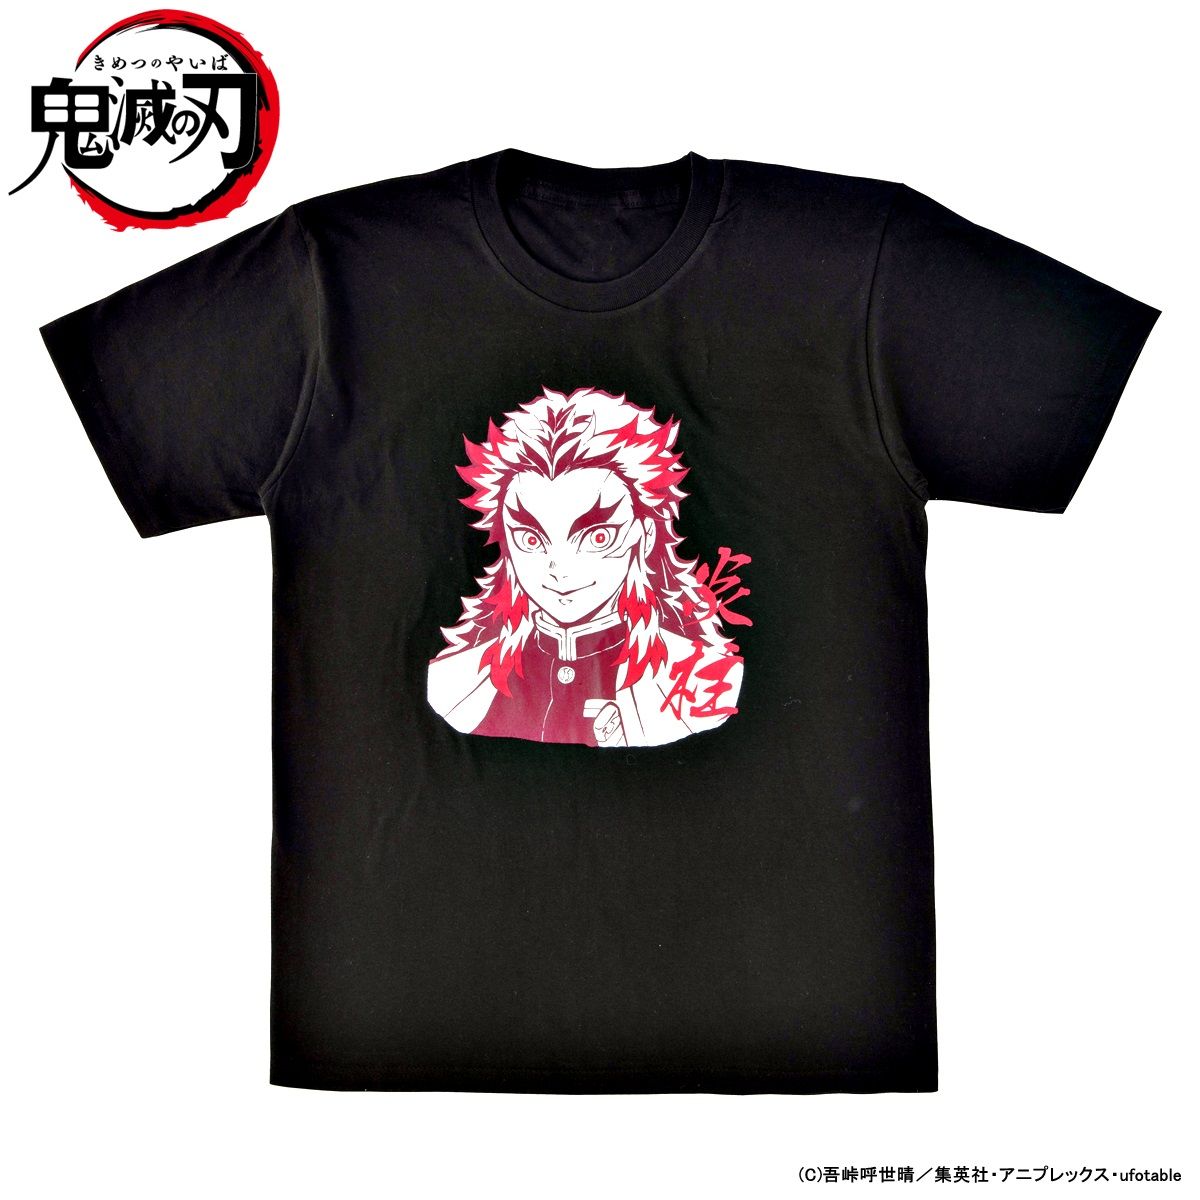 Demon Slayer: Kimetsu no Yaiba The Pillars T-shirt